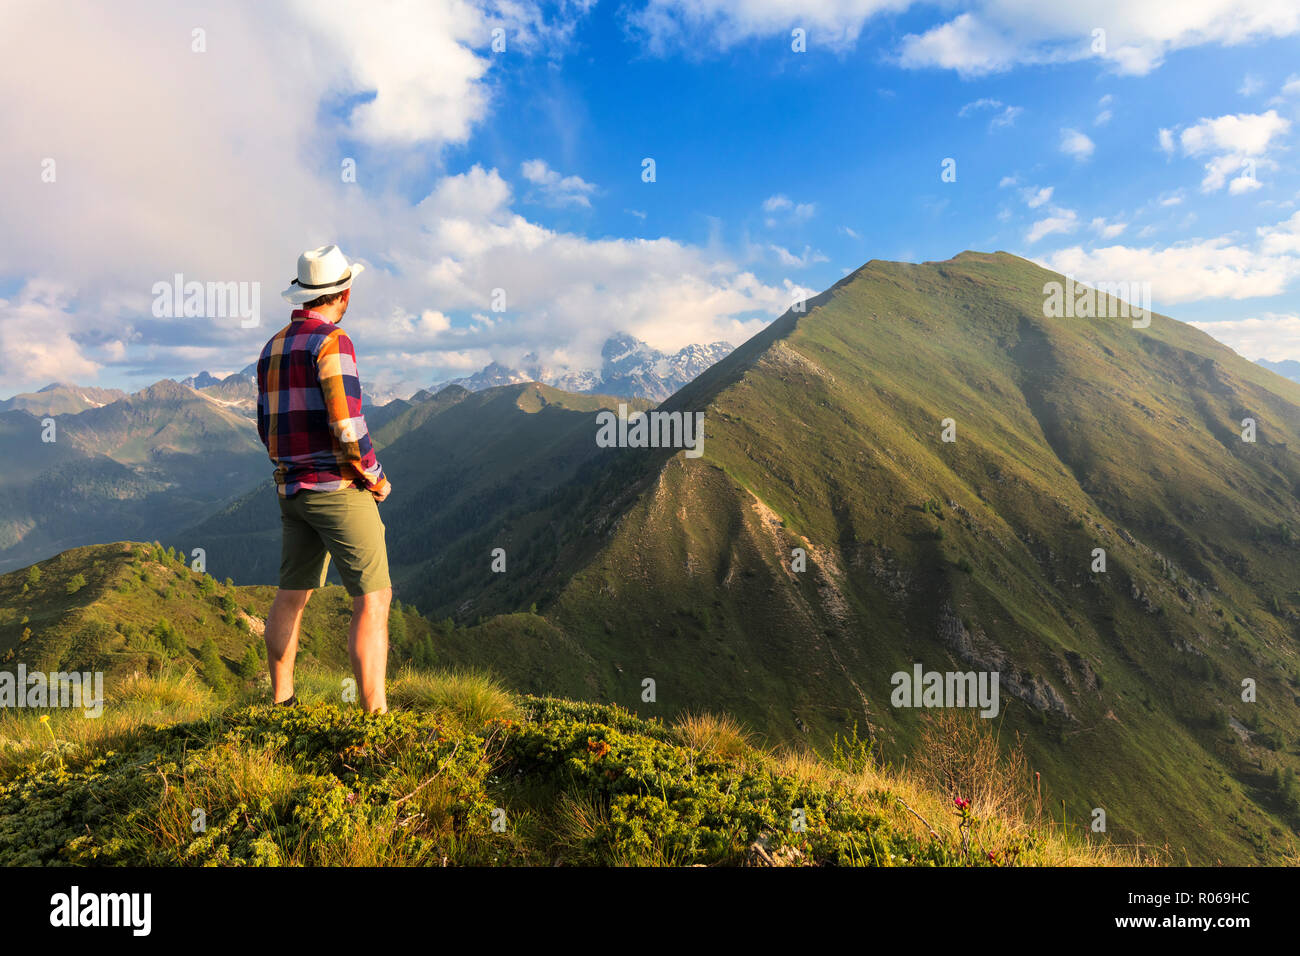 Uomo sulla sommità del Monte Rolla guarda al Monte Disgrazia e il Sasso Canale, in provincia di Sondrio e della Valtellina, Lombardia, Italia, Europa Foto Stock